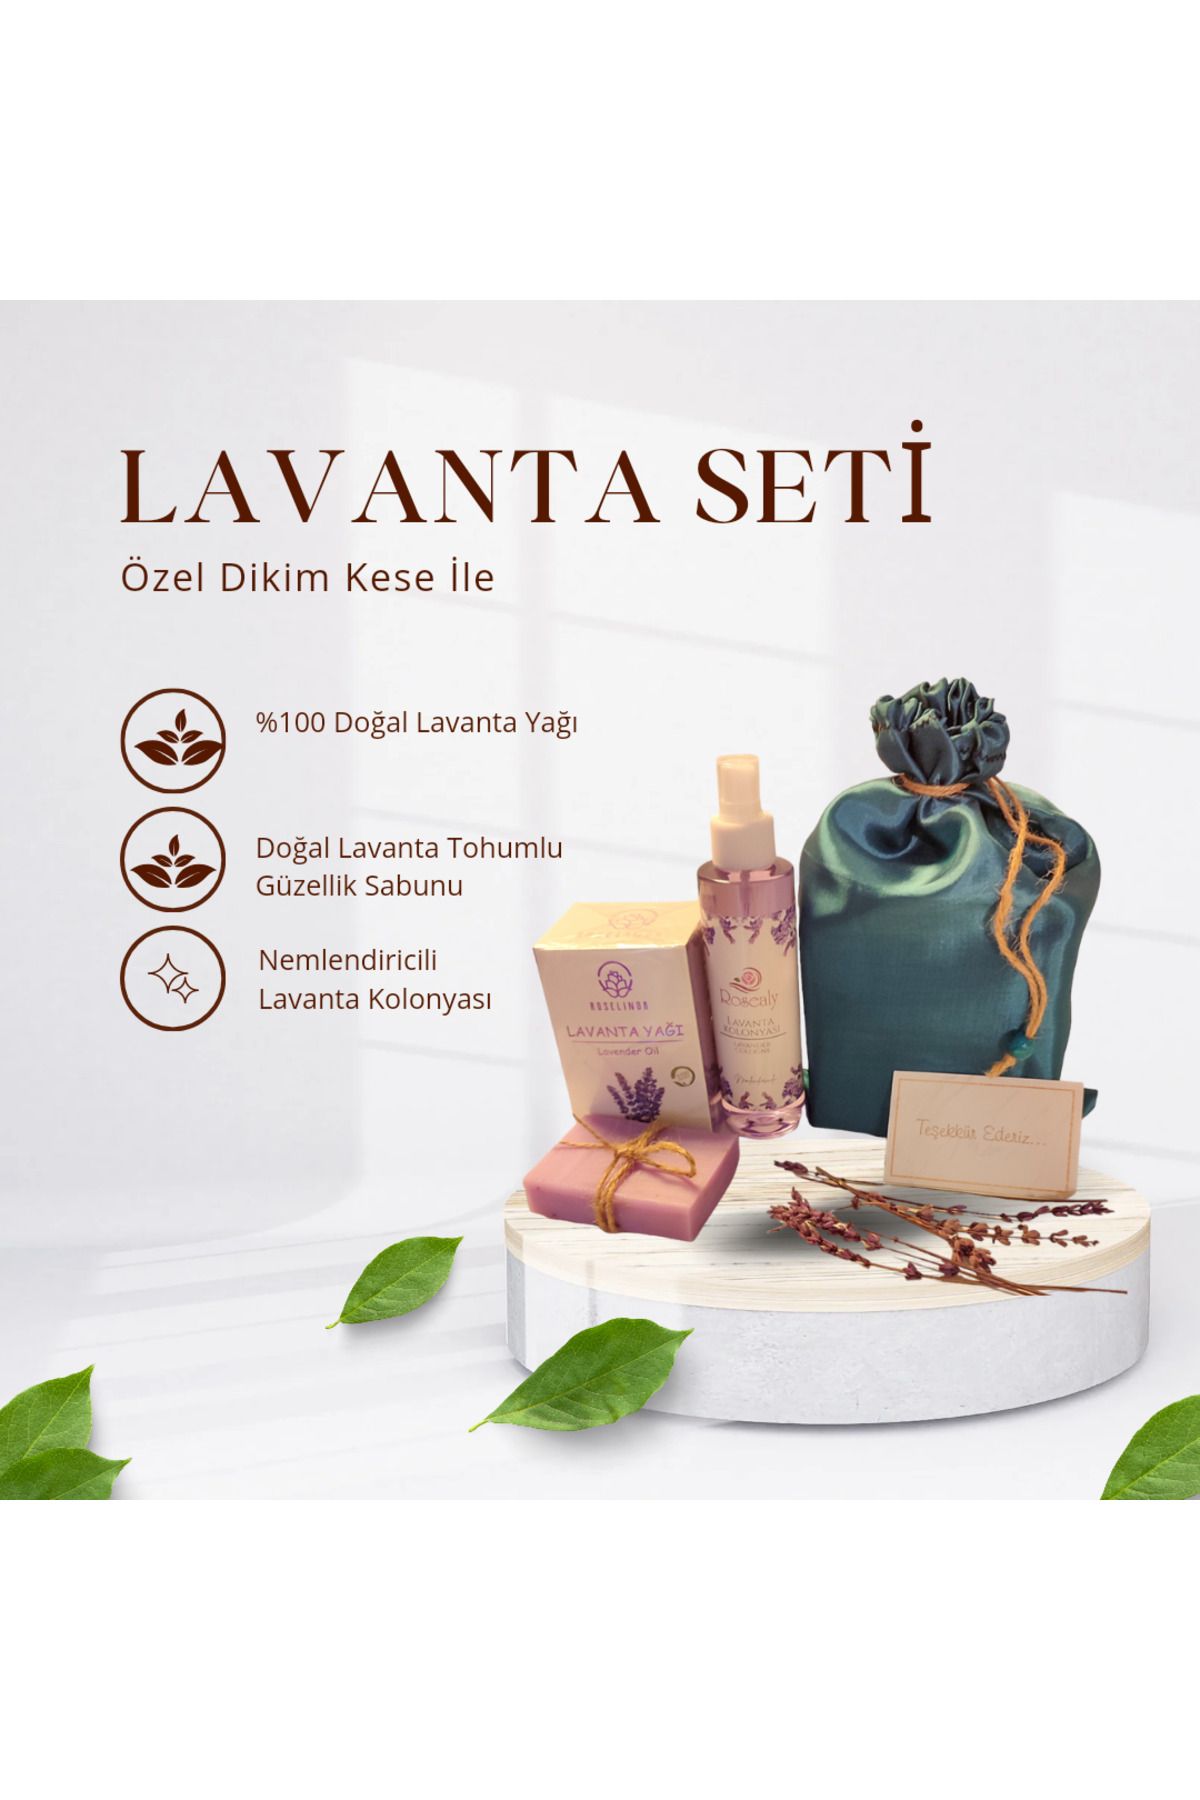 Roselinda Lavanta Seti-Doğal Lavanta Yağı,Lavanta Tohumlu Güzellik Sabunu,Nemlendiricili Lavanta Kolonyası